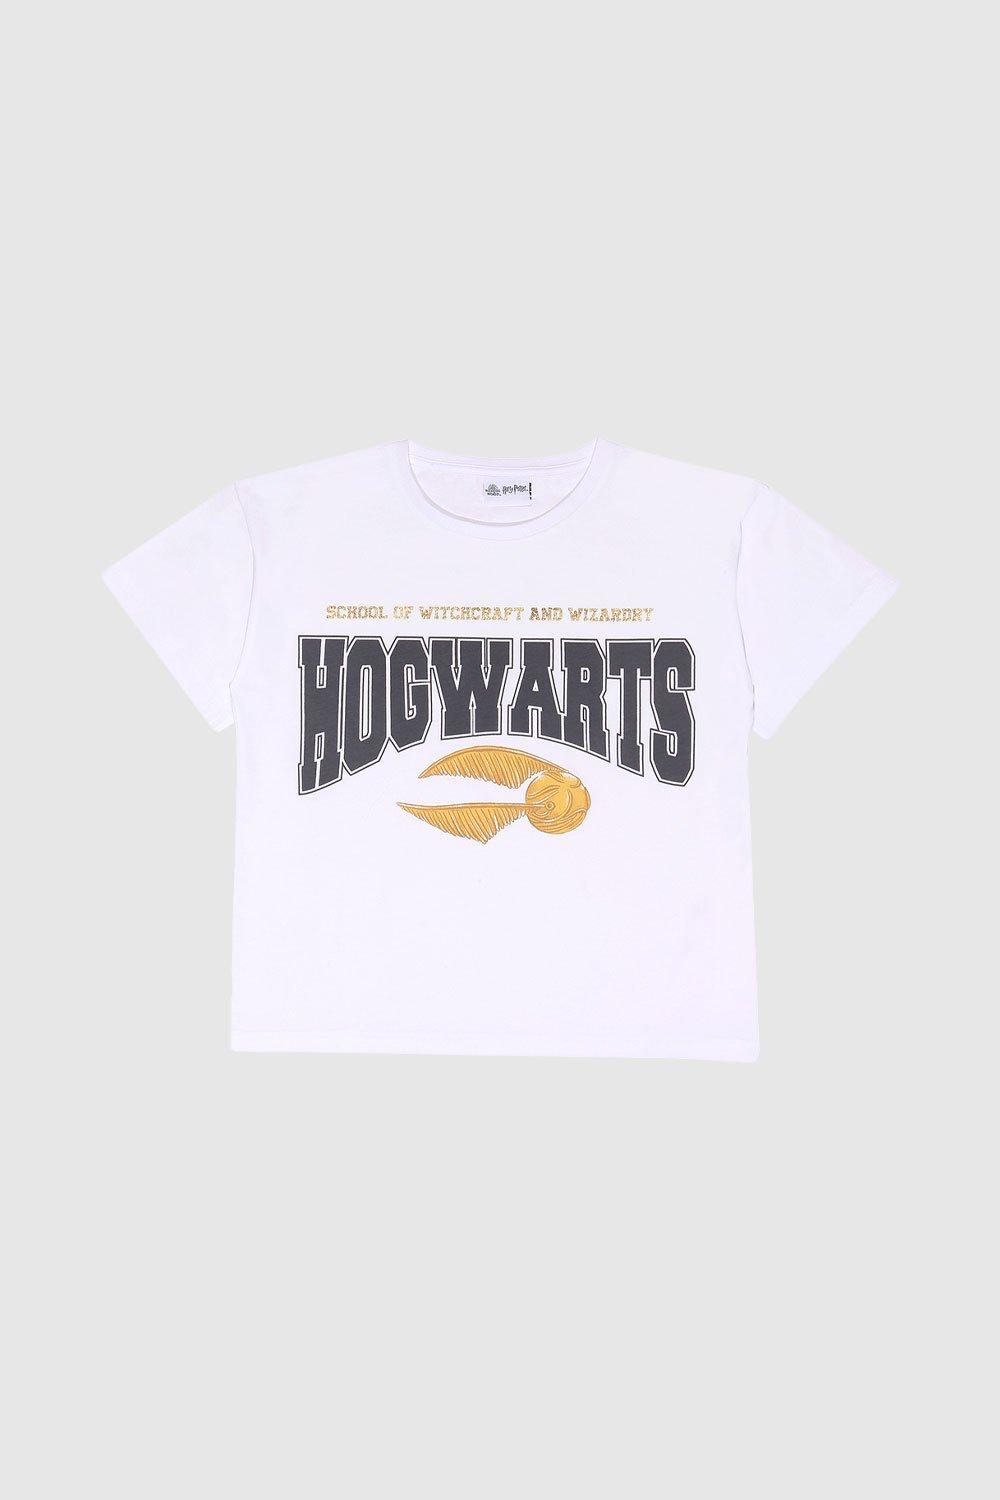 Hogwarts Golden Snitch T-Shirt